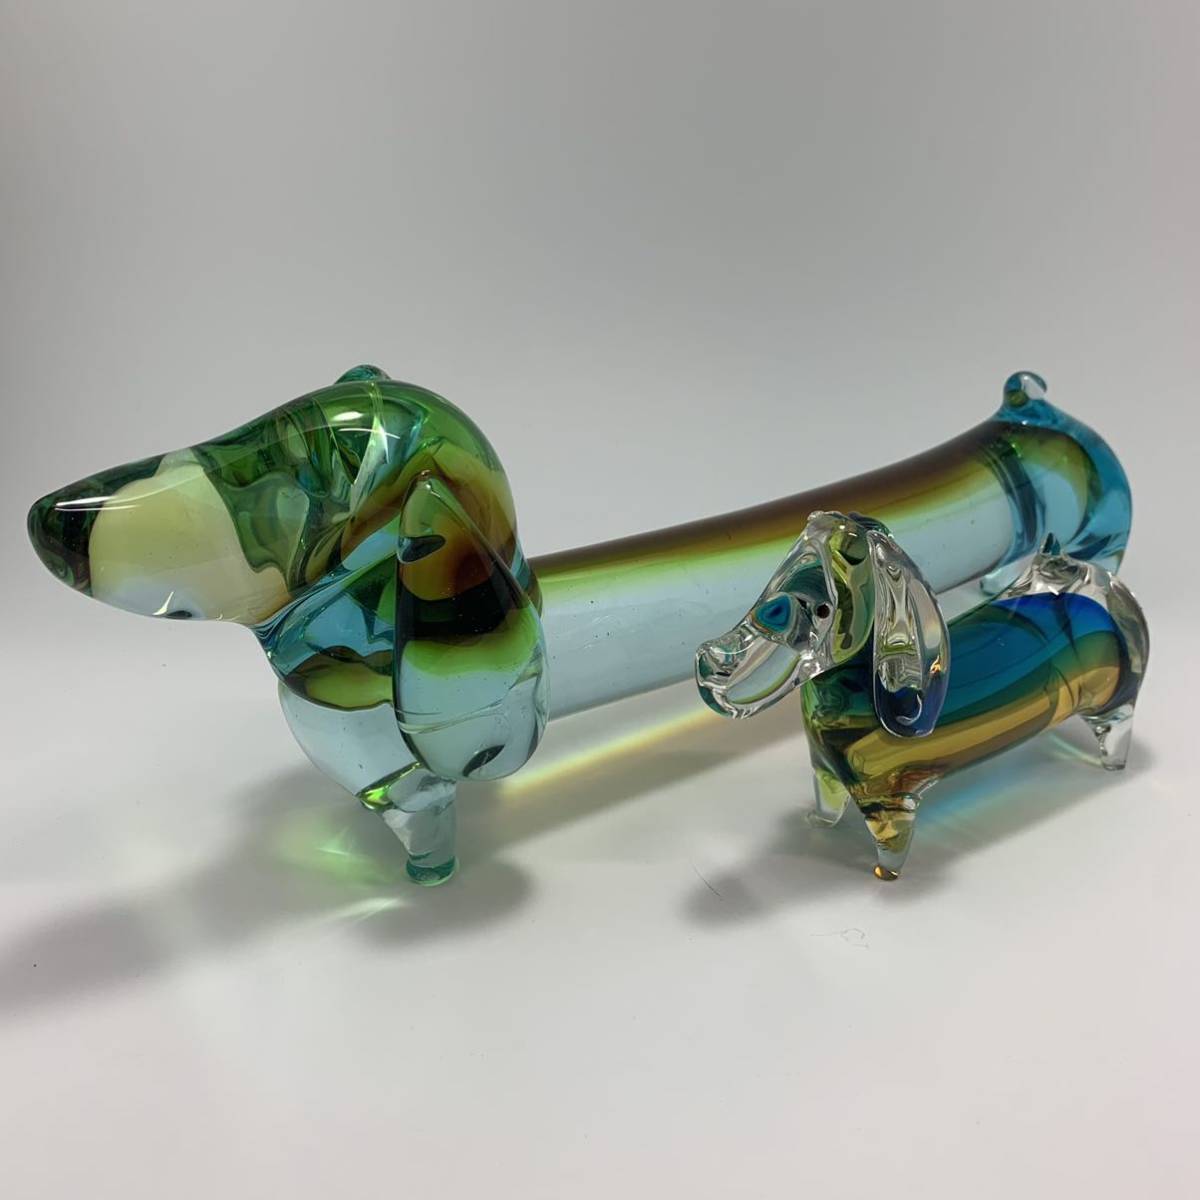 S871) Multi Glass マルティグラス ガラス 犬 ダックスフント 2匹 親子 置物 インテリア オブジェ 特産工芸品